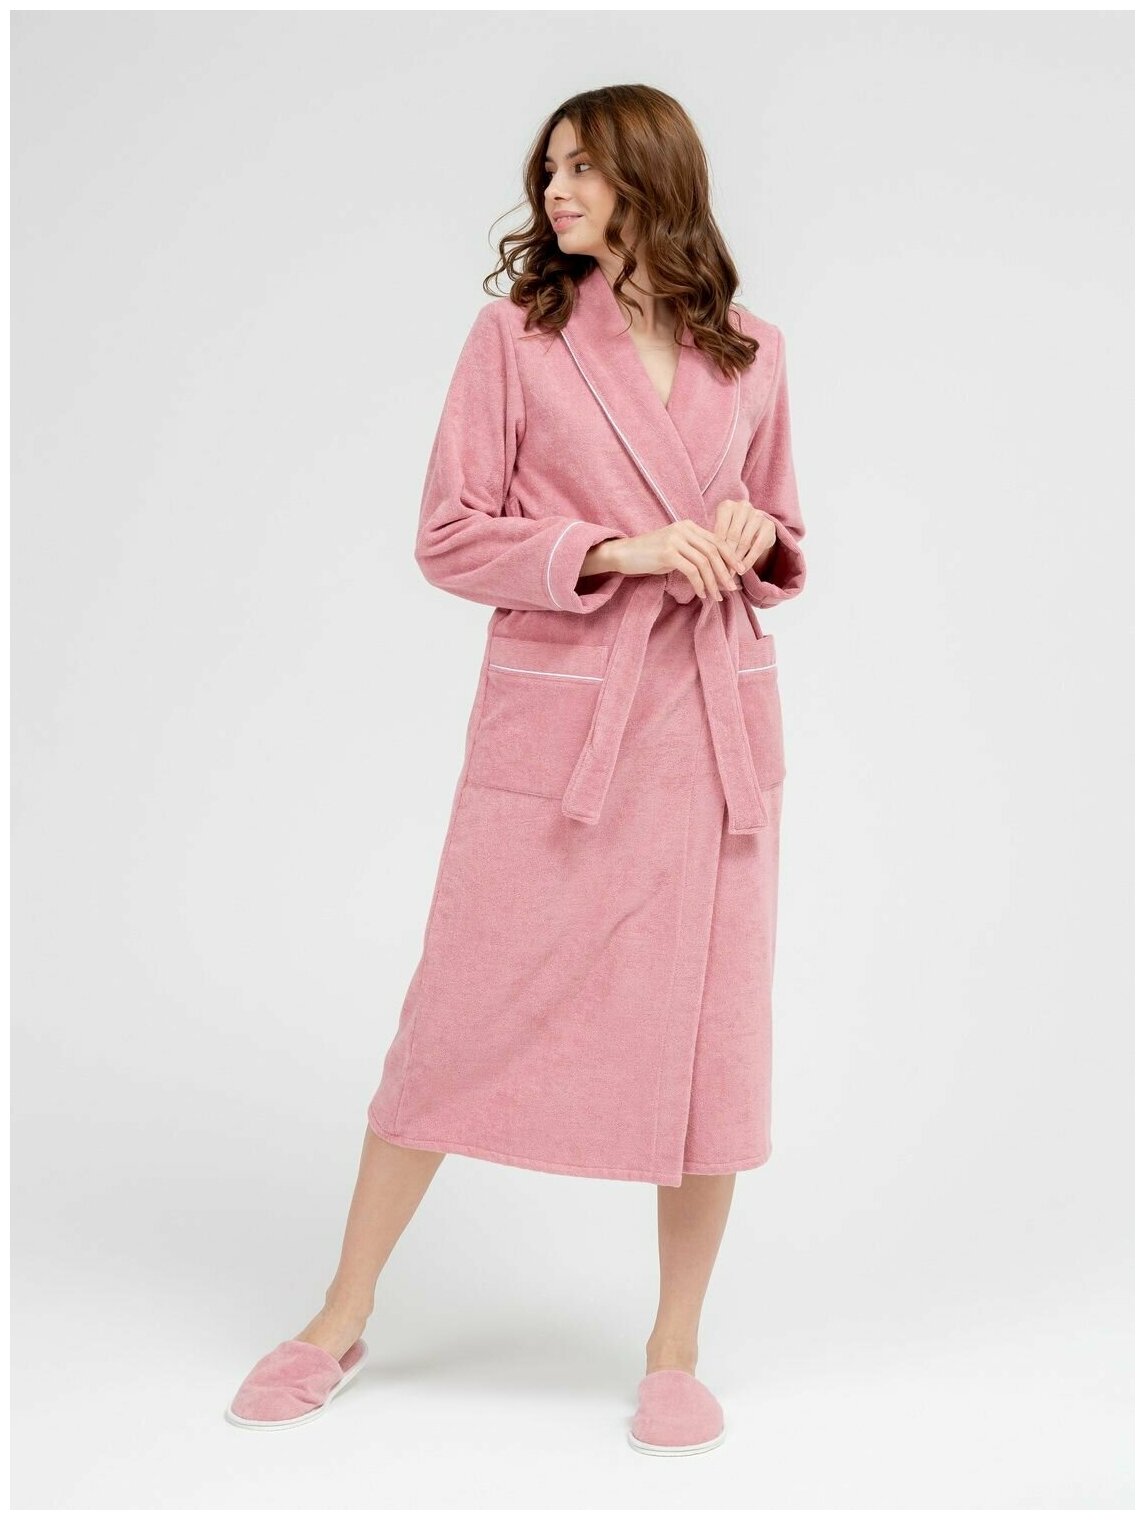 Женский махровый халат с кантом Росхалат, пудрово-розовый. Размер 50-52 - фотография № 2